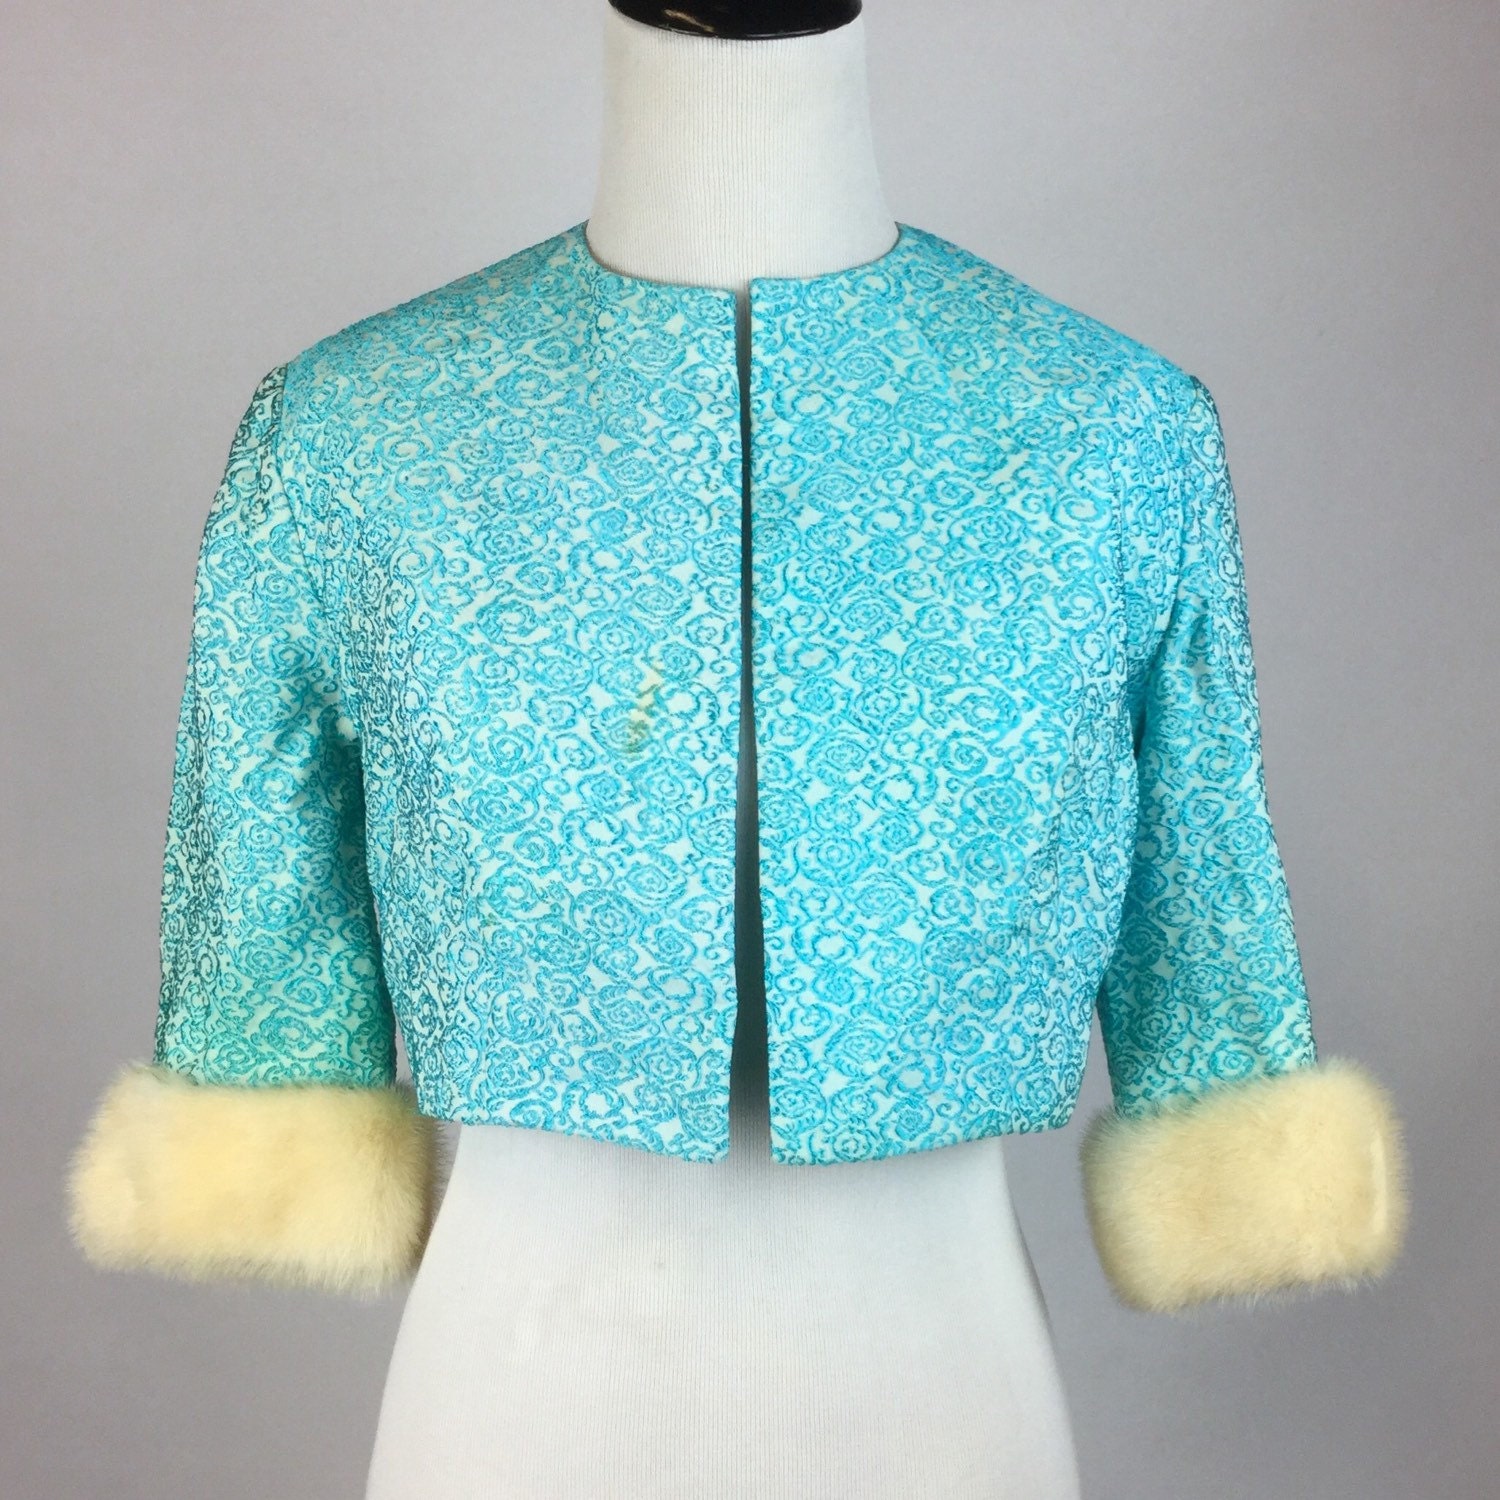 Vintage Aqua Blue Brocade Bolero Jacket Cropped Off-White Soft